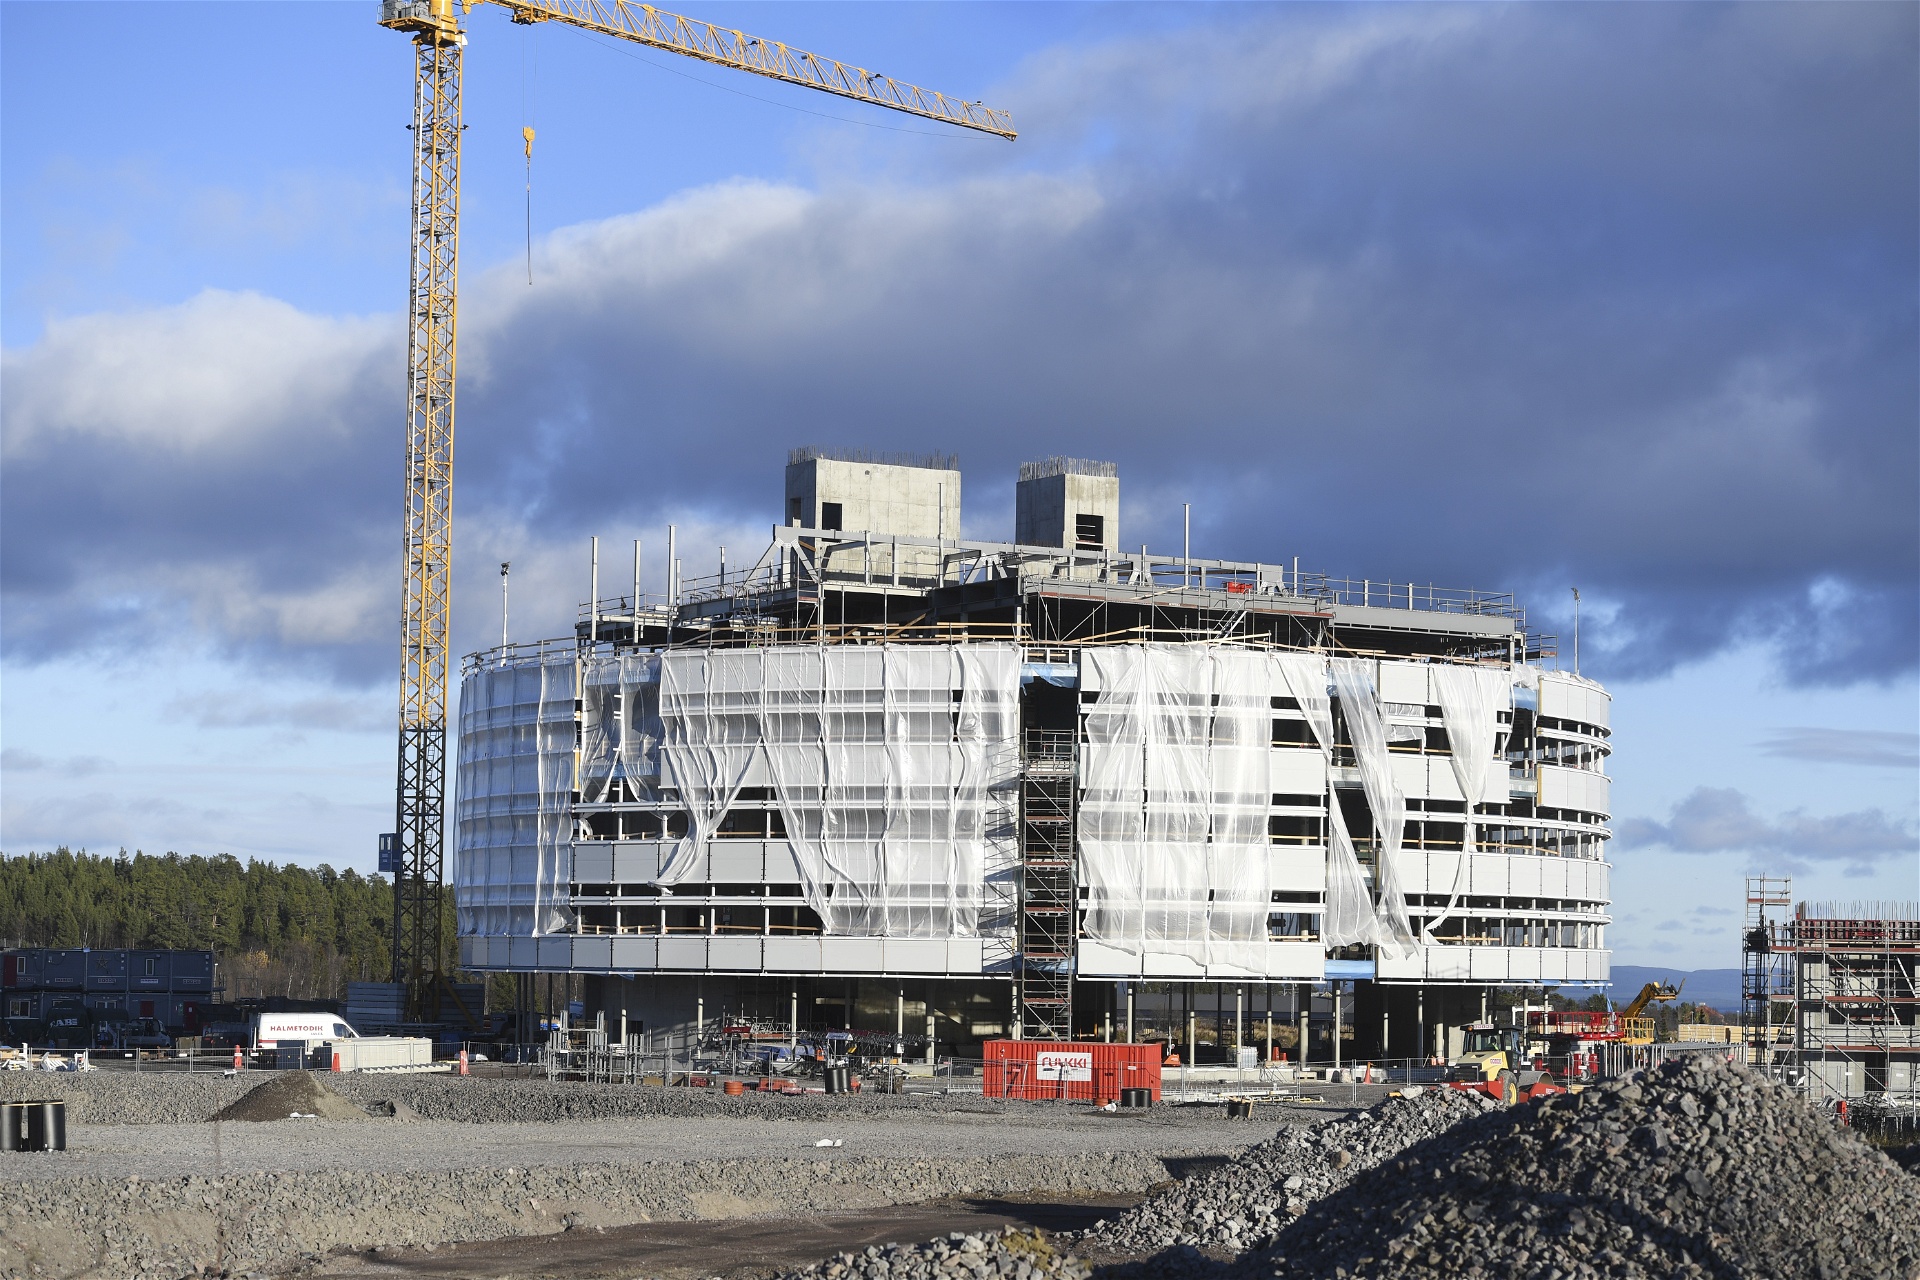 Nya stadshuset Kristallen under uppbyggnad 2016. Det byggs ett par kilometer från det gamla liksom stora delar avcentrala Kiruna som tvingas flyttas på grund av LKAB:s gruvdrift. Foto: Fredrik Sandberg/TT